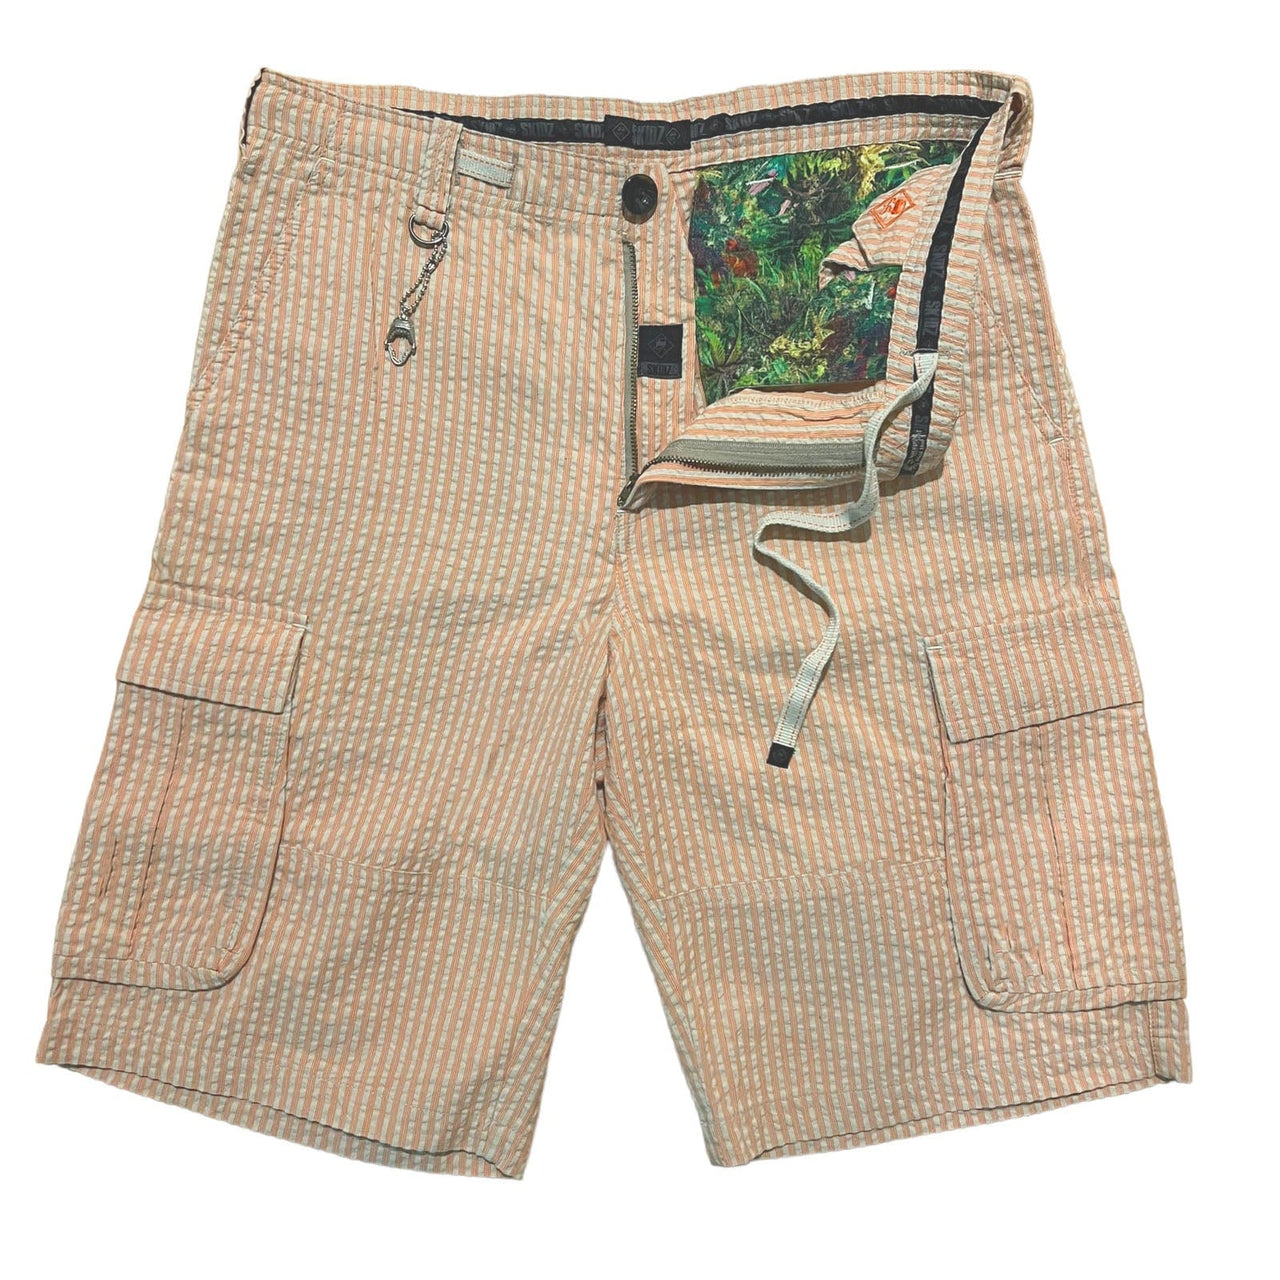 SKIDZ Shorts Seersucker Cargo Shorts - Orange Striped